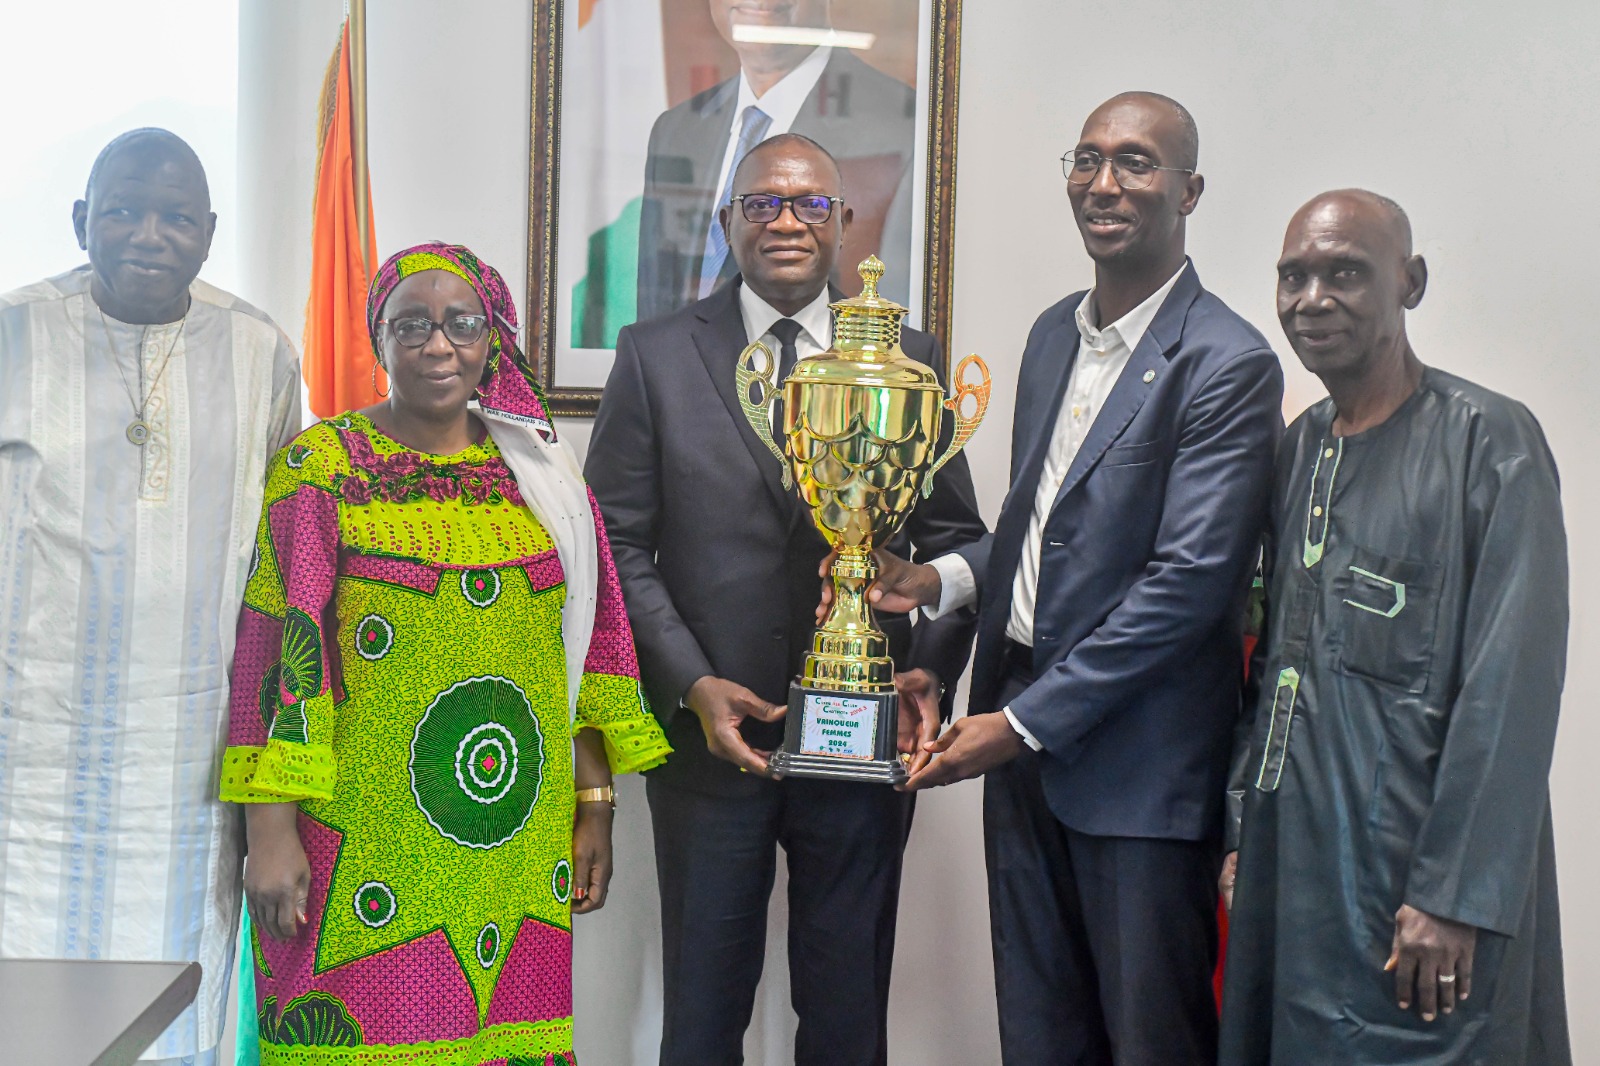 Le ministre des sports prédit : "La Côte d'Ivoire doit rayonner en Afrique dans toutes les disciplines"